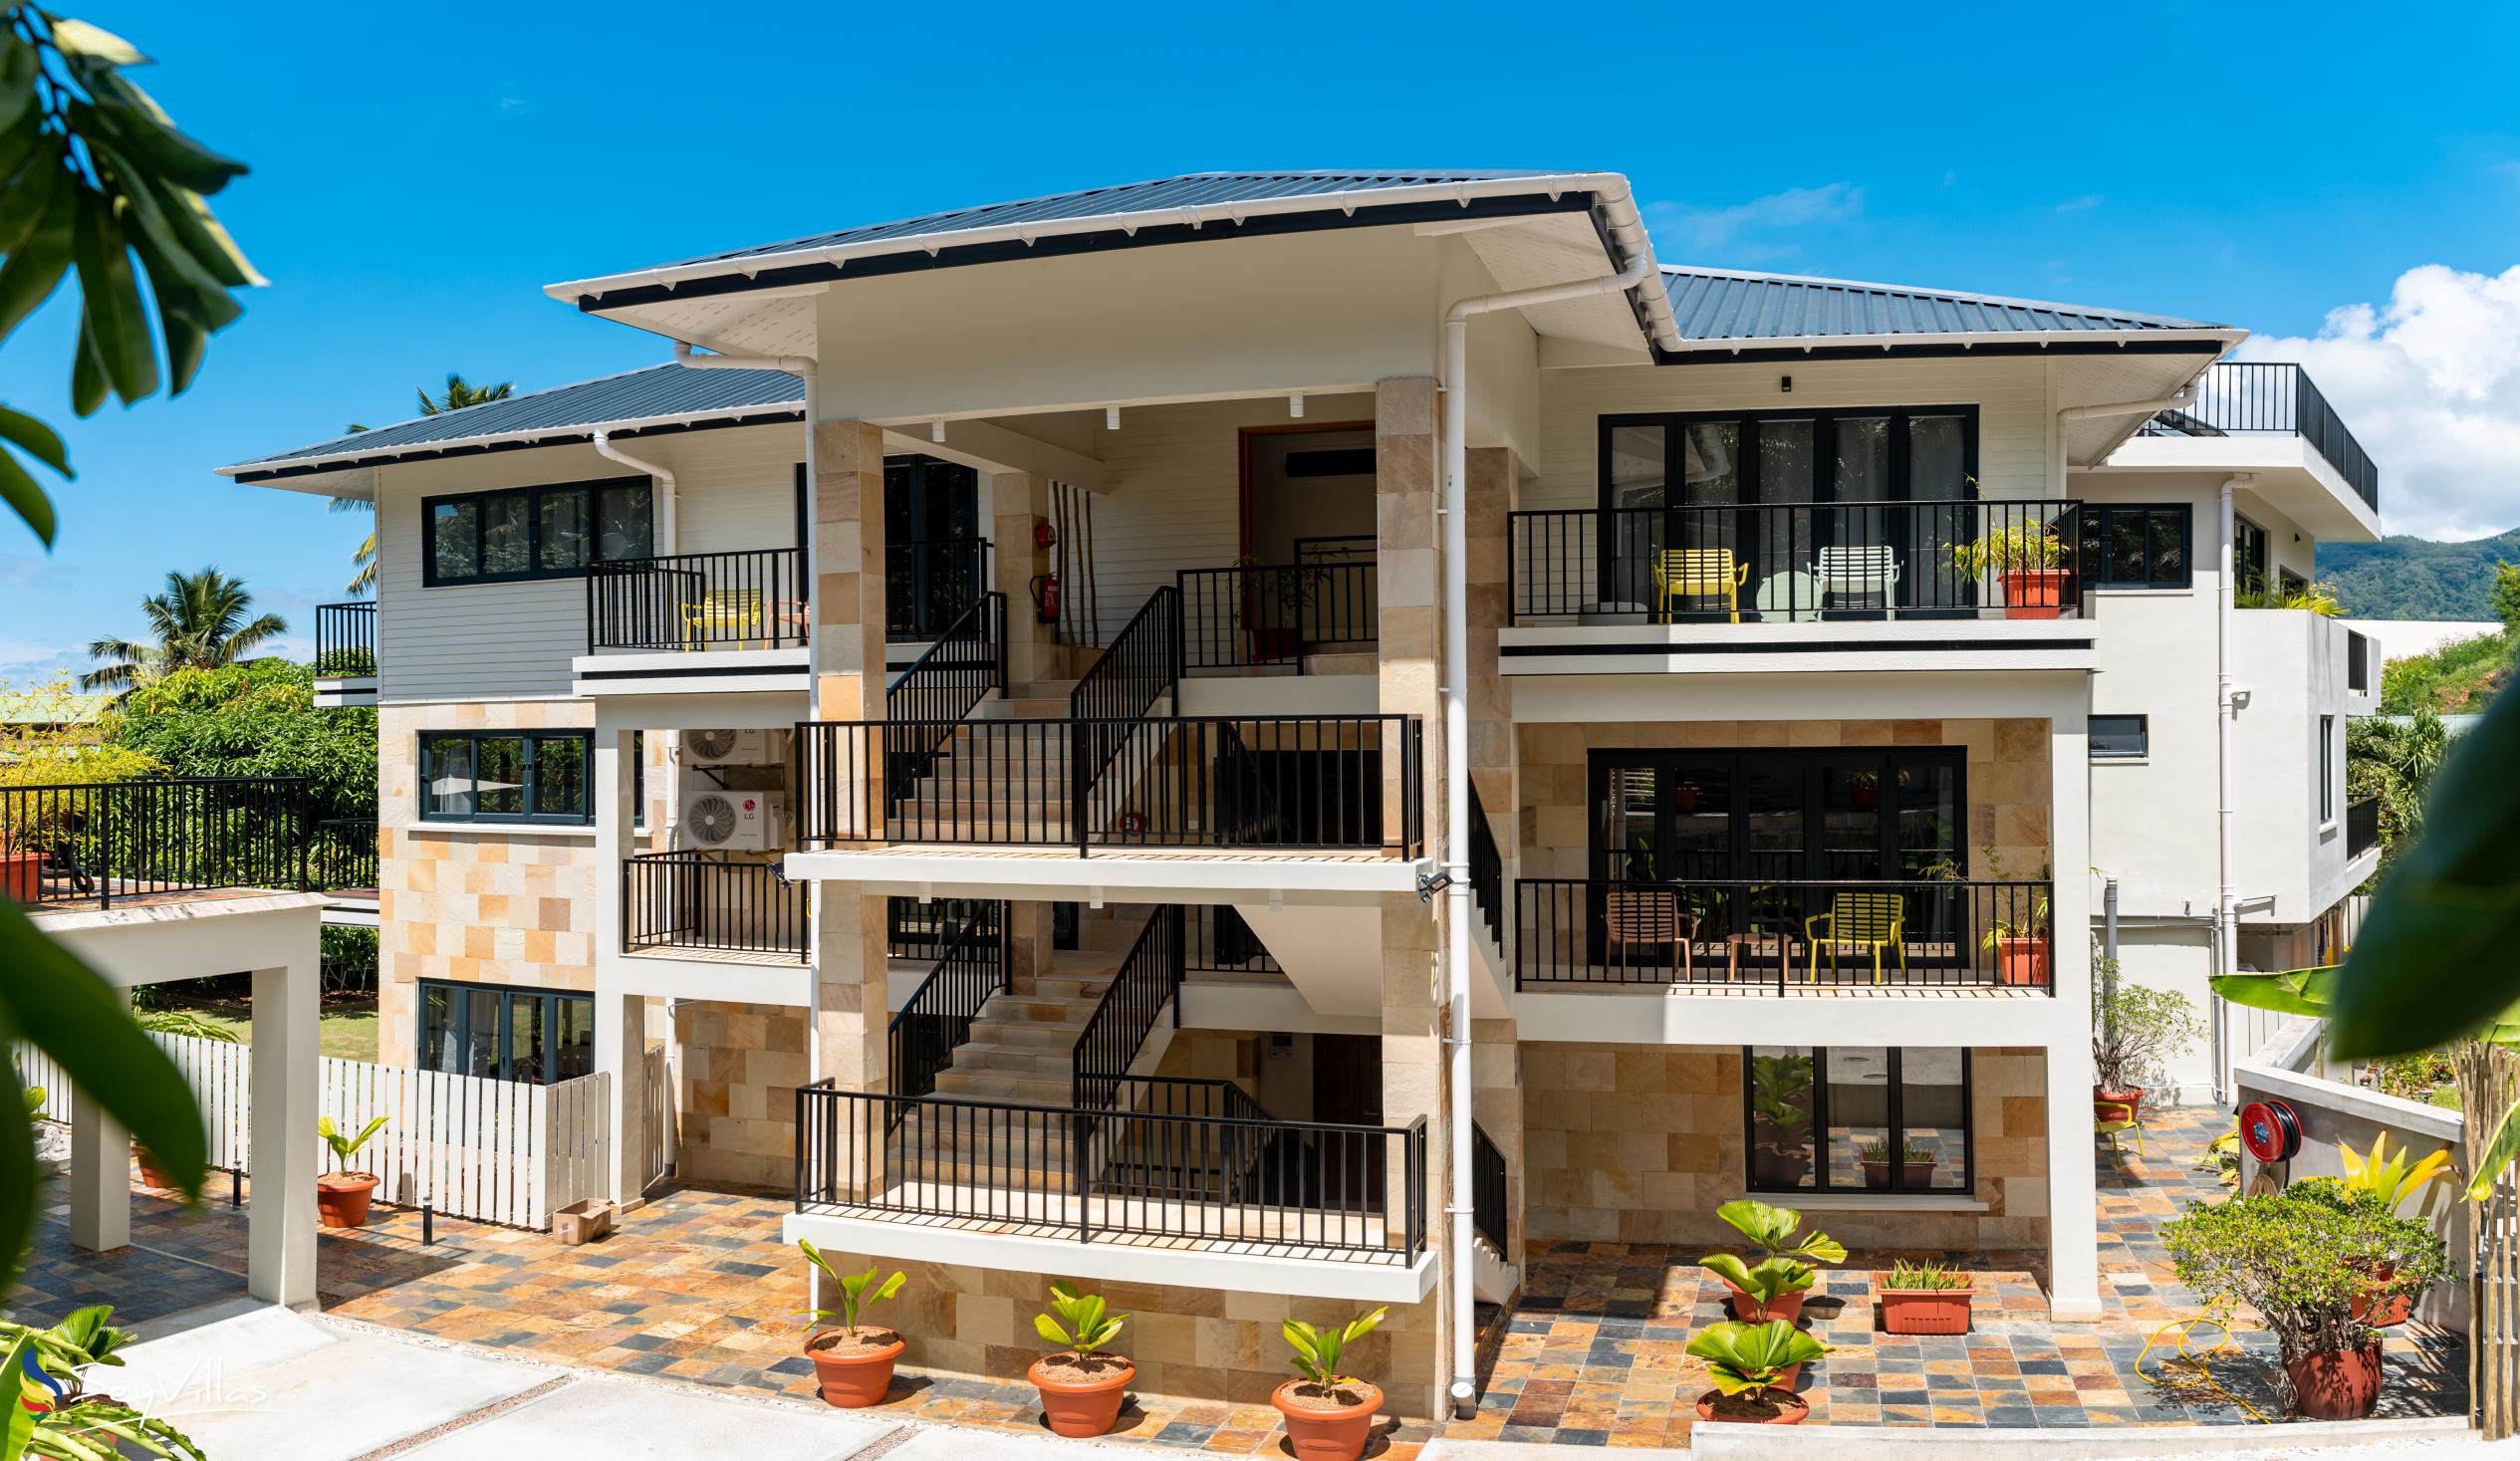 Photo 2: Lodoicea Apartments - Outdoor area - Mahé (Seychelles)